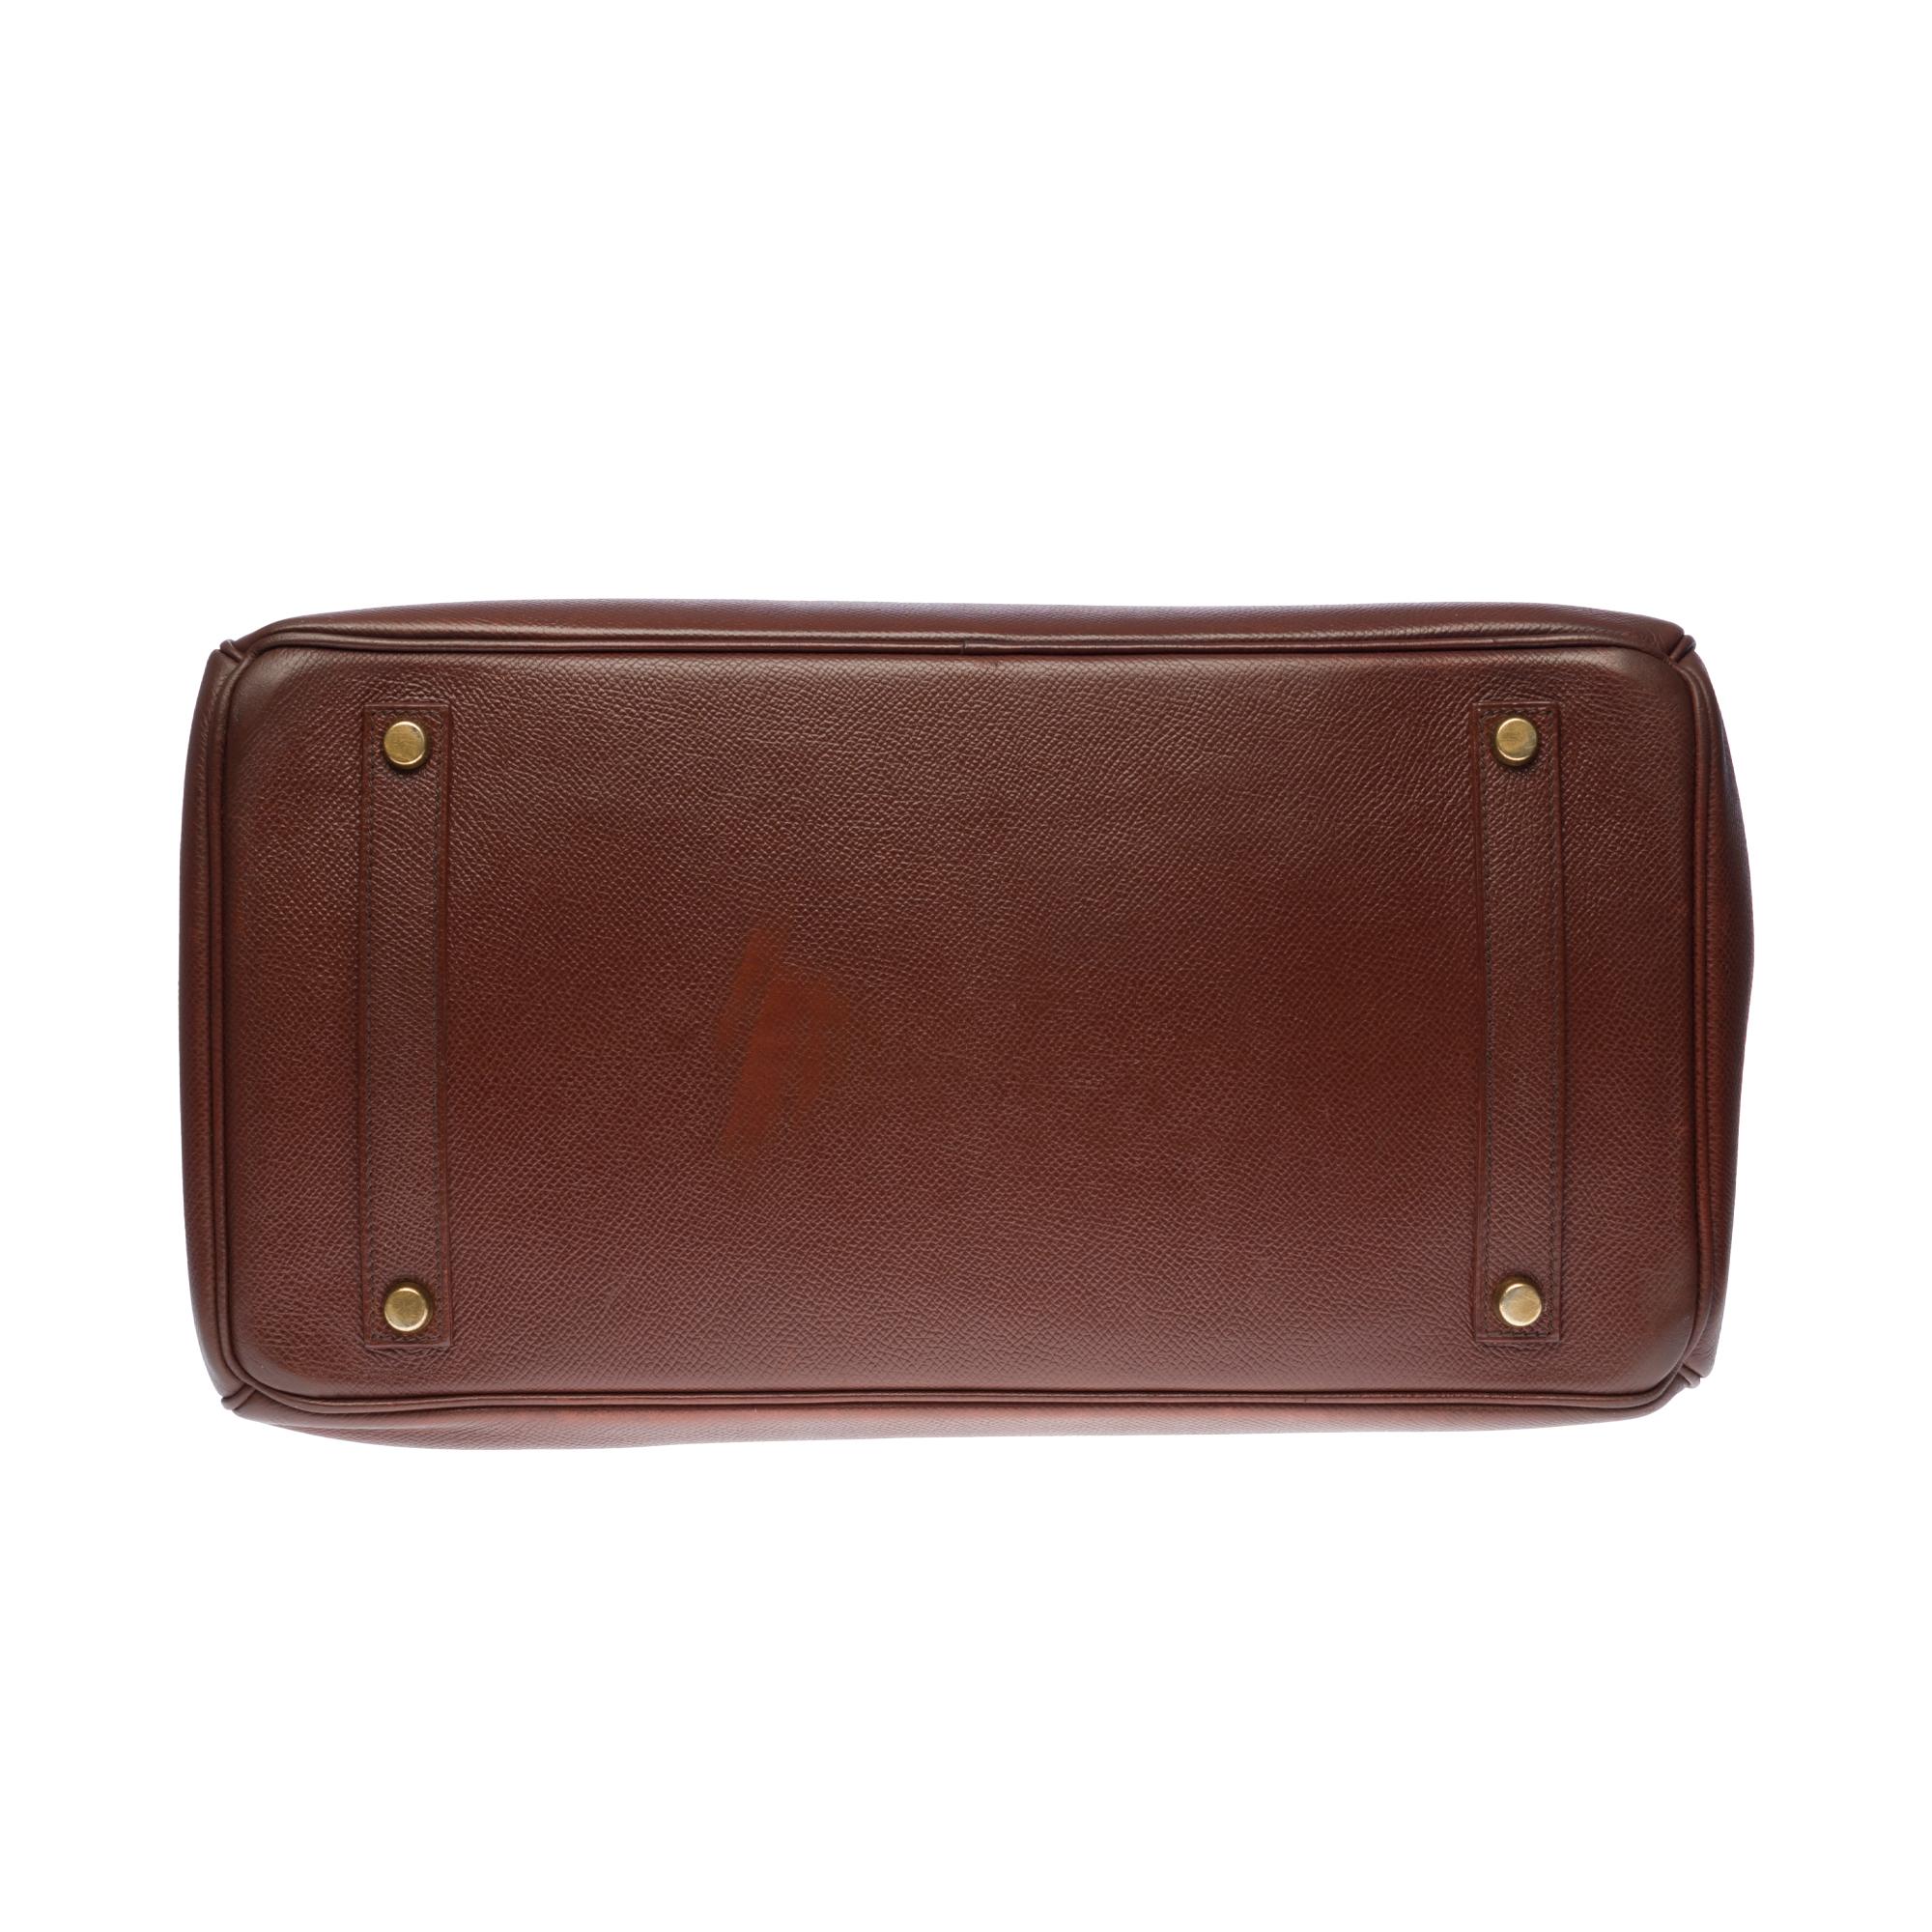 Hermès Birkin 35 handbag in brown Courchevel leather with gold hardware ! 2